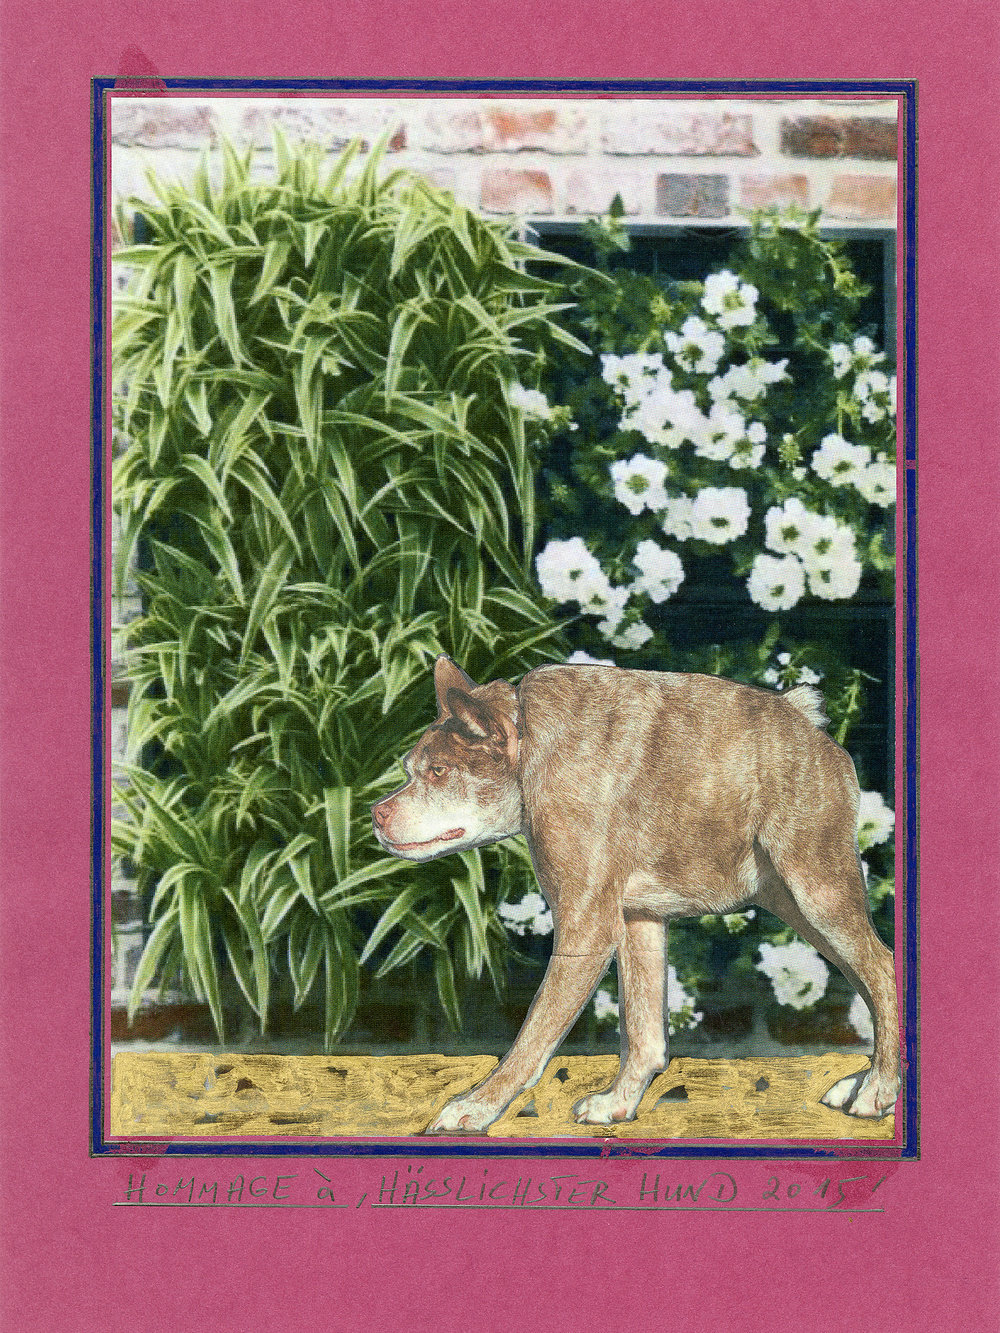 Büttner, hommage à, 'hässlichster hund 2015', hommage à, ”ugliest dog, 2015, collage, 16.125 x 13 in, 41 x 33 cm, cnon 58.319